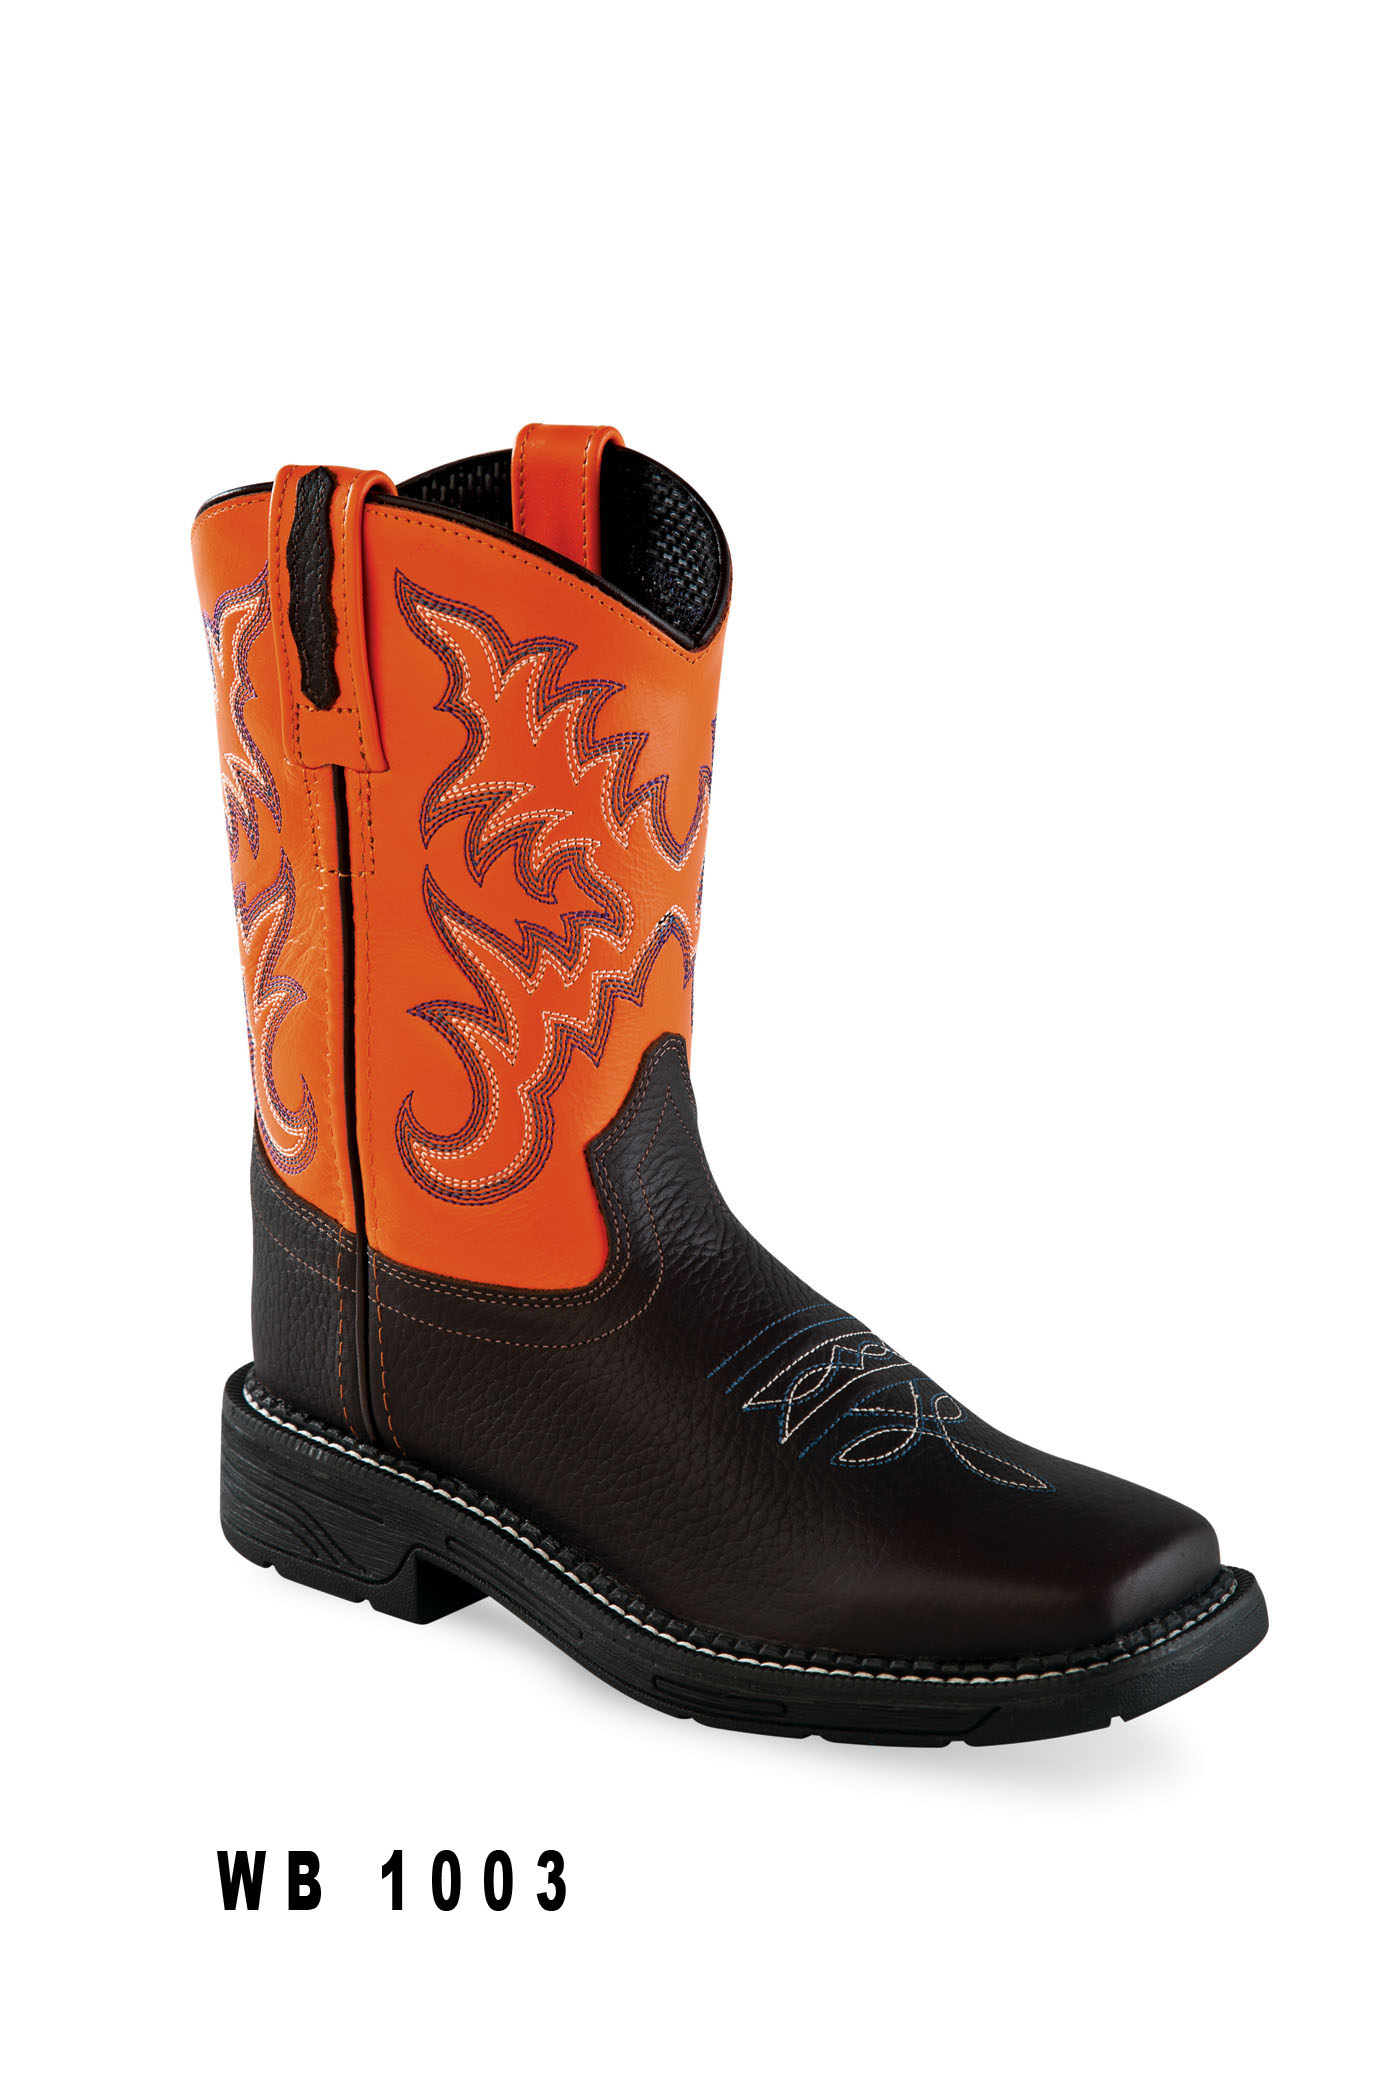 Cowboy boots children WB1003, brown-orange